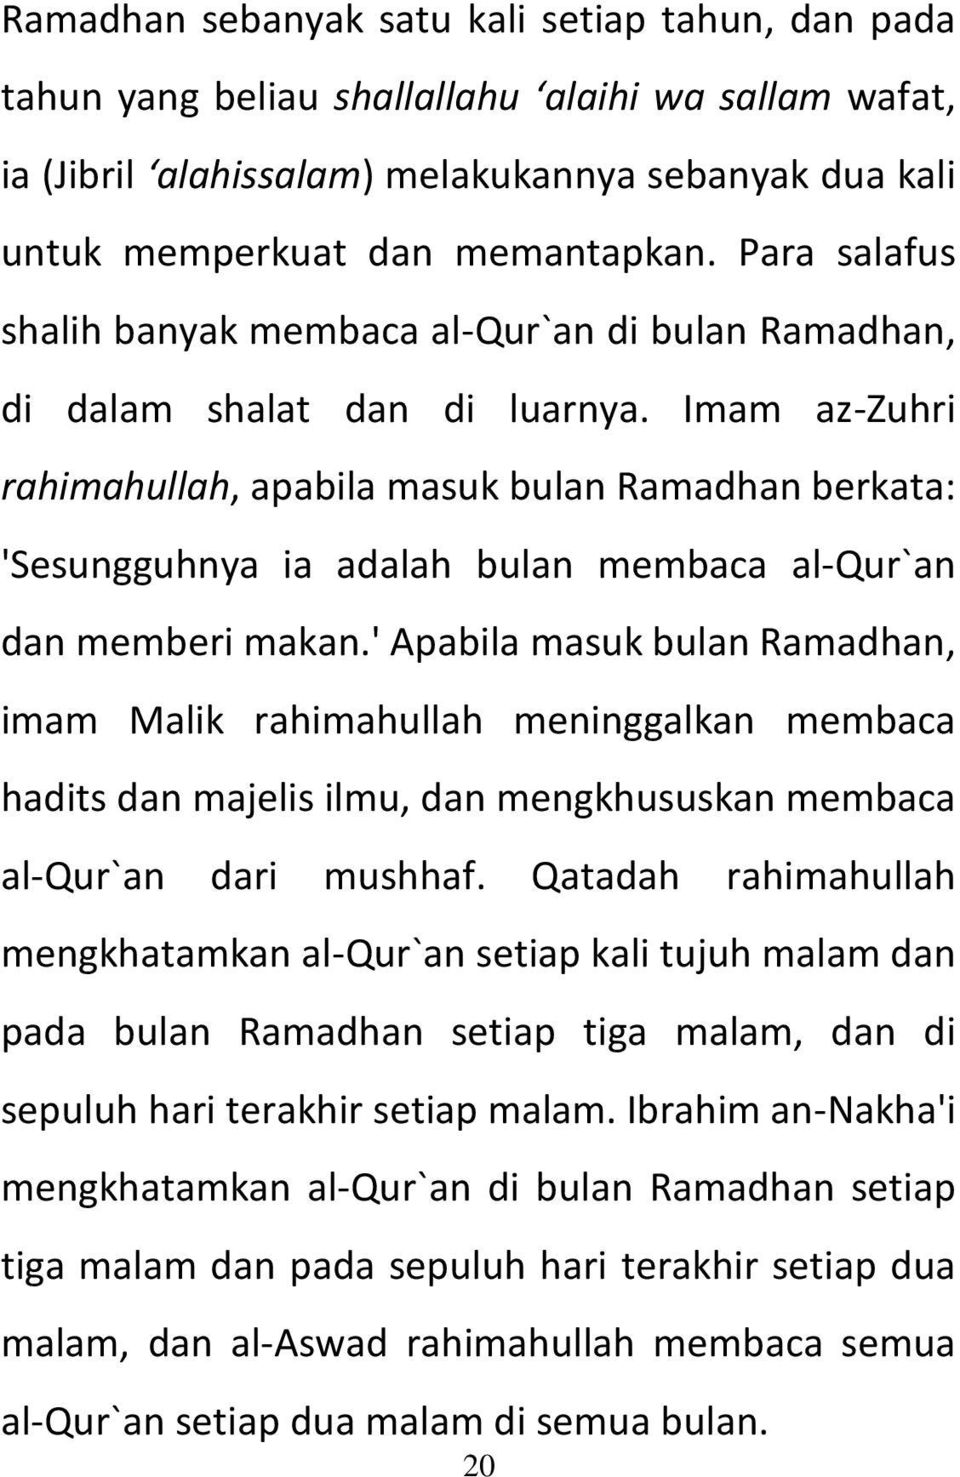 Imam az-zuhri rahimahullah, apabila masuk bulan Ramadhan berkata: 'Sesungguhnya ia adalah bulan membaca al-qur`an dan memberi makan.